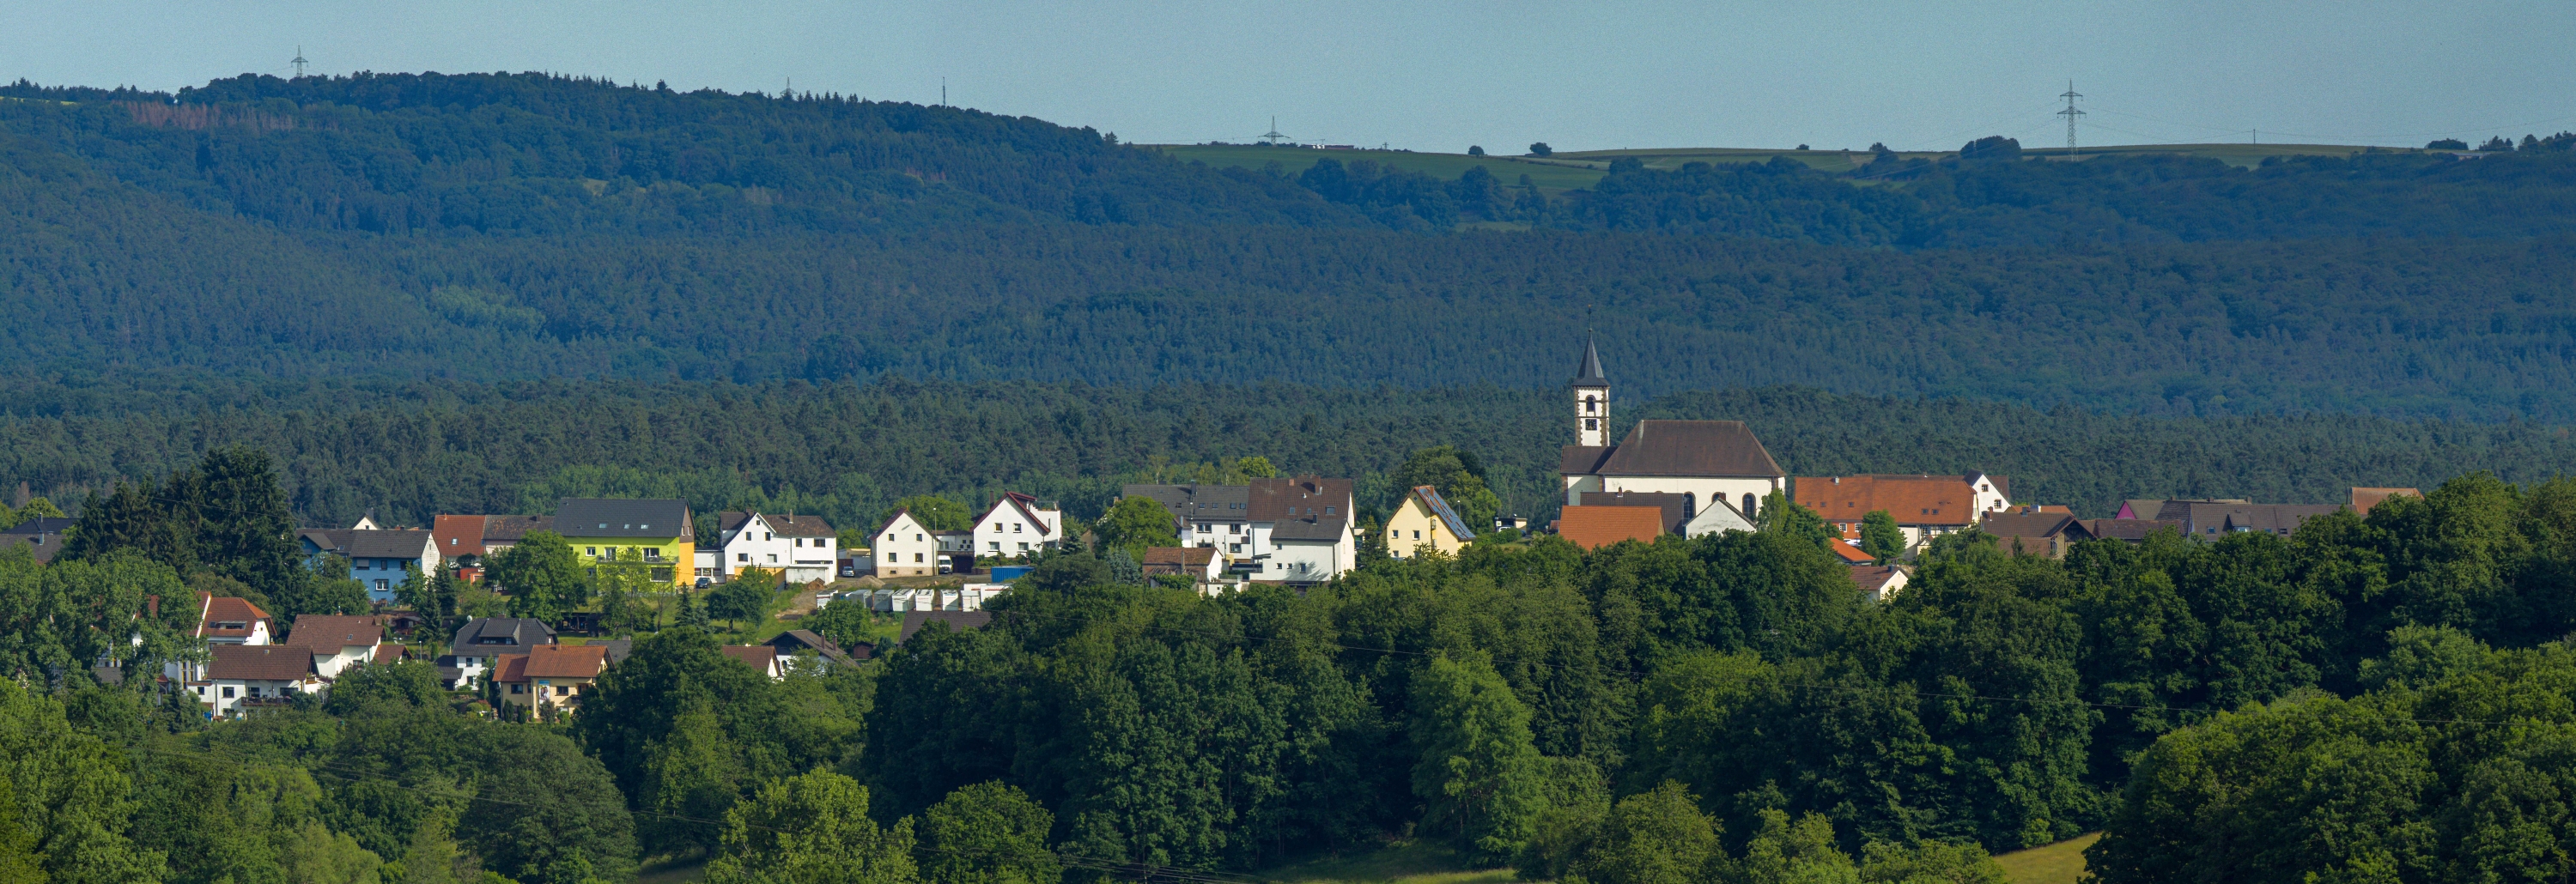 Bild mit dem Blick auf Schönenberg-Kübelberg